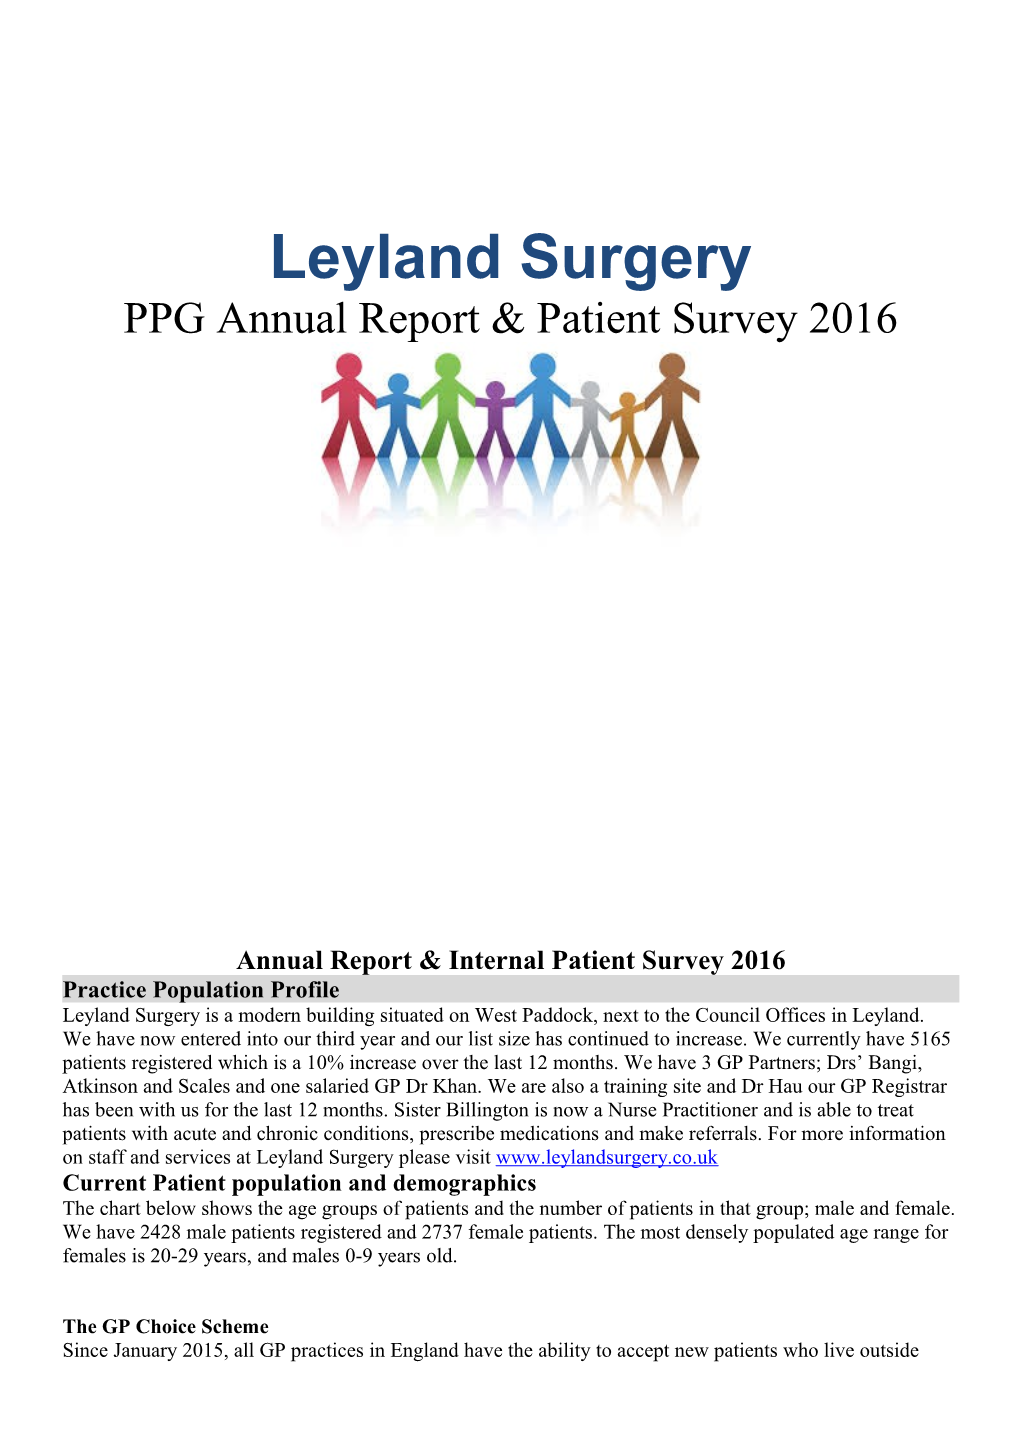 Annual Report &Internal Patient Survey 2016